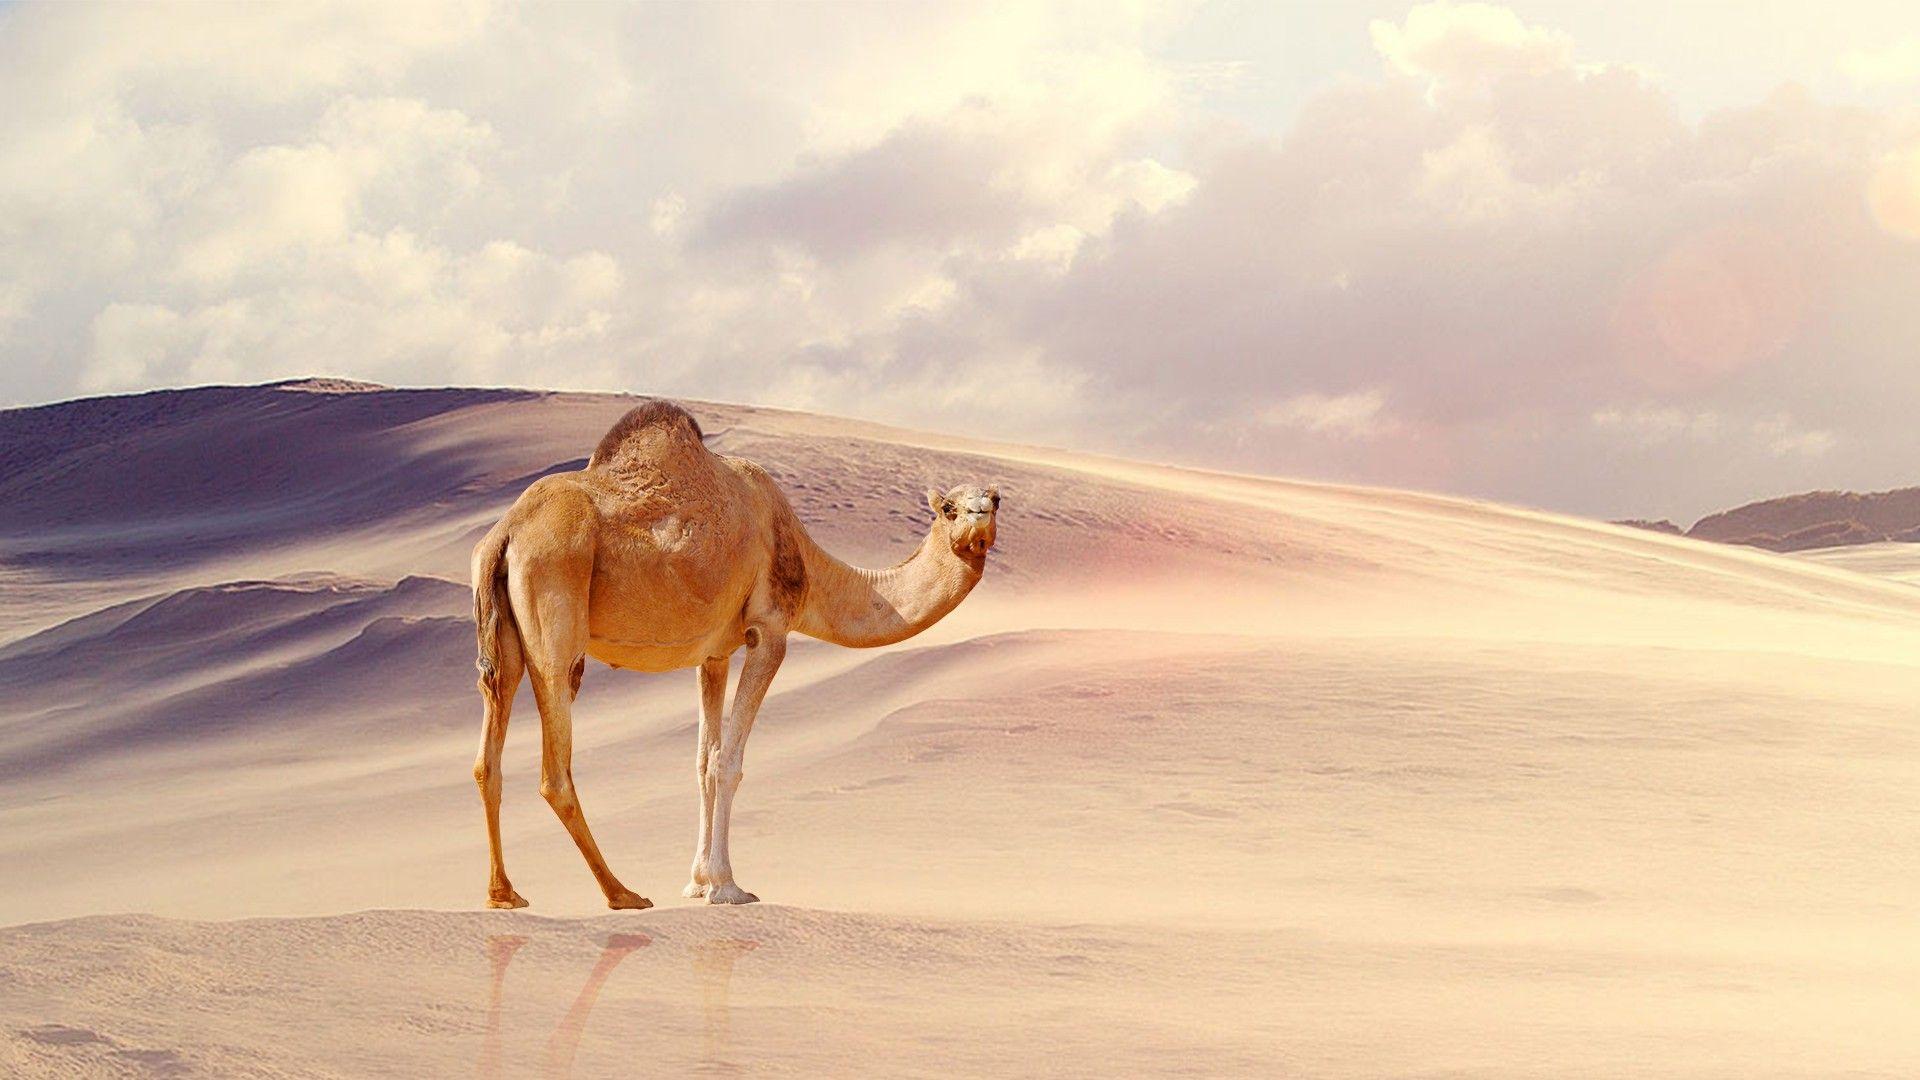 Desert Camel Wallpaper Free Desert Camel Background